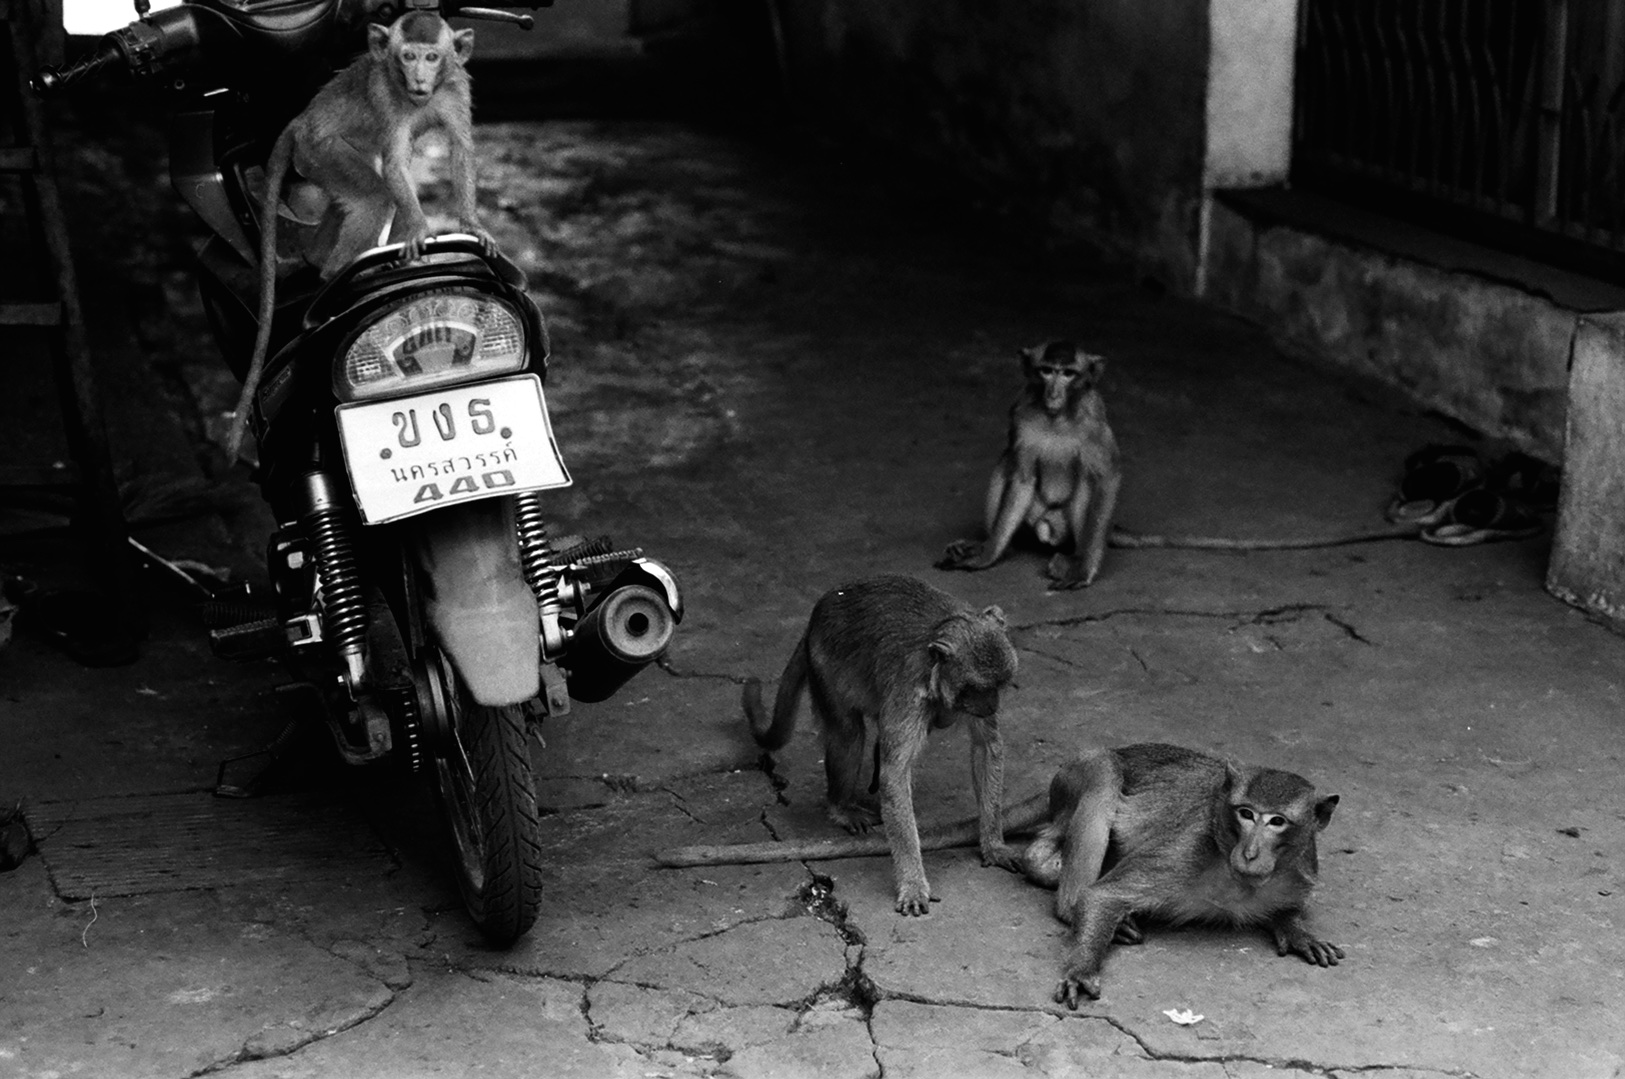 Monkeys & Motorcycle